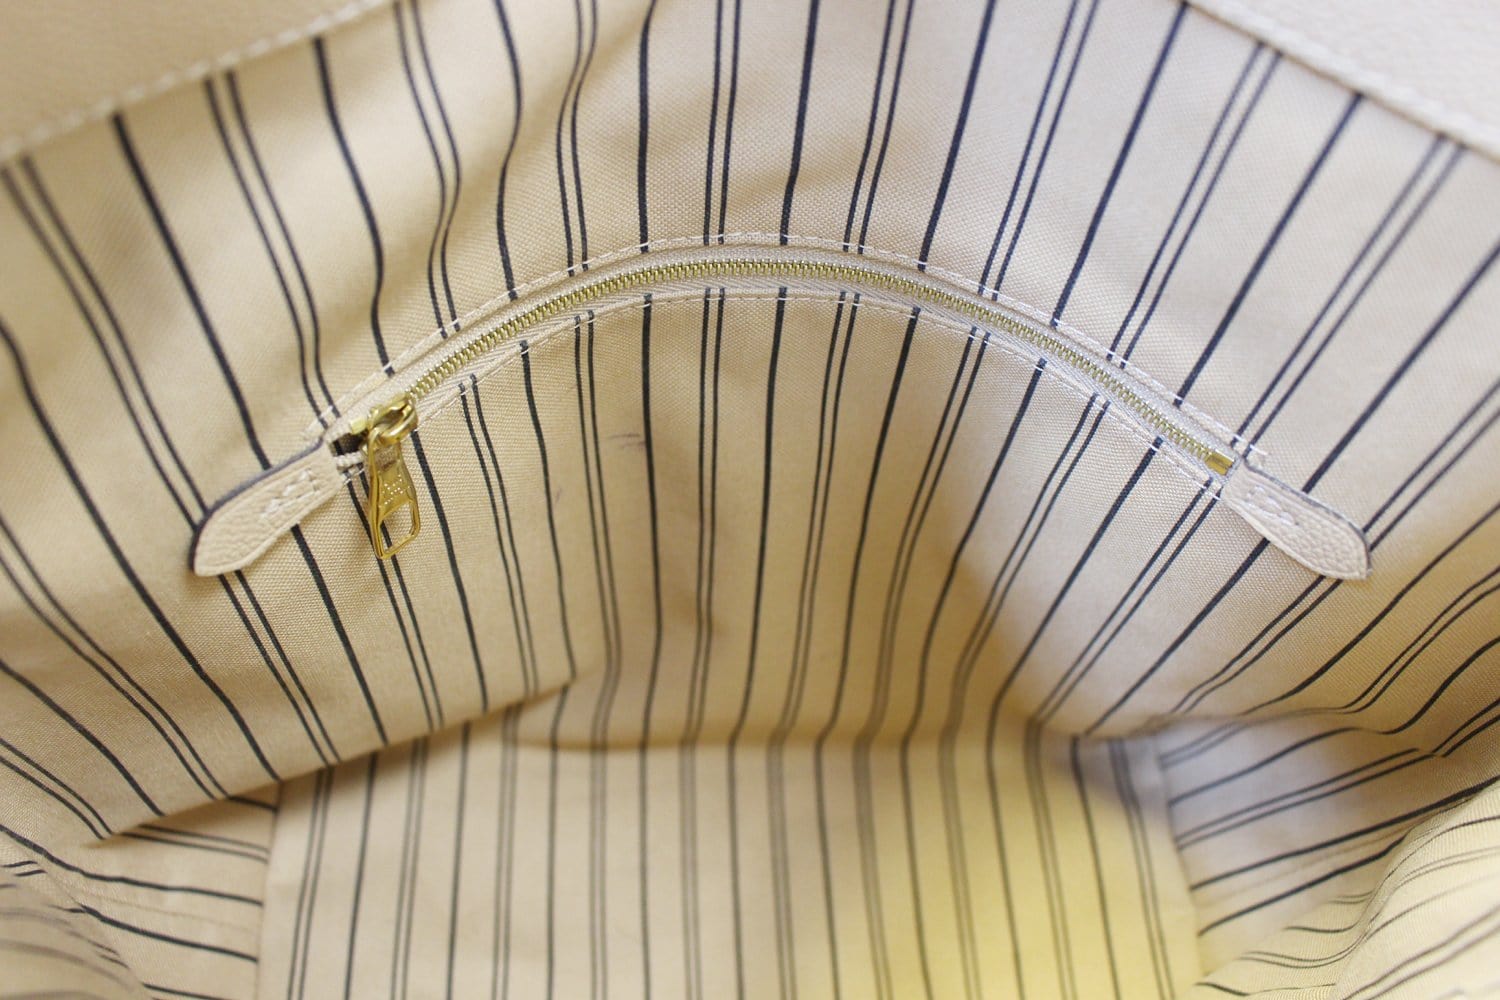 Louis Vuitton Châle Monogram Dune - Designer WishBags